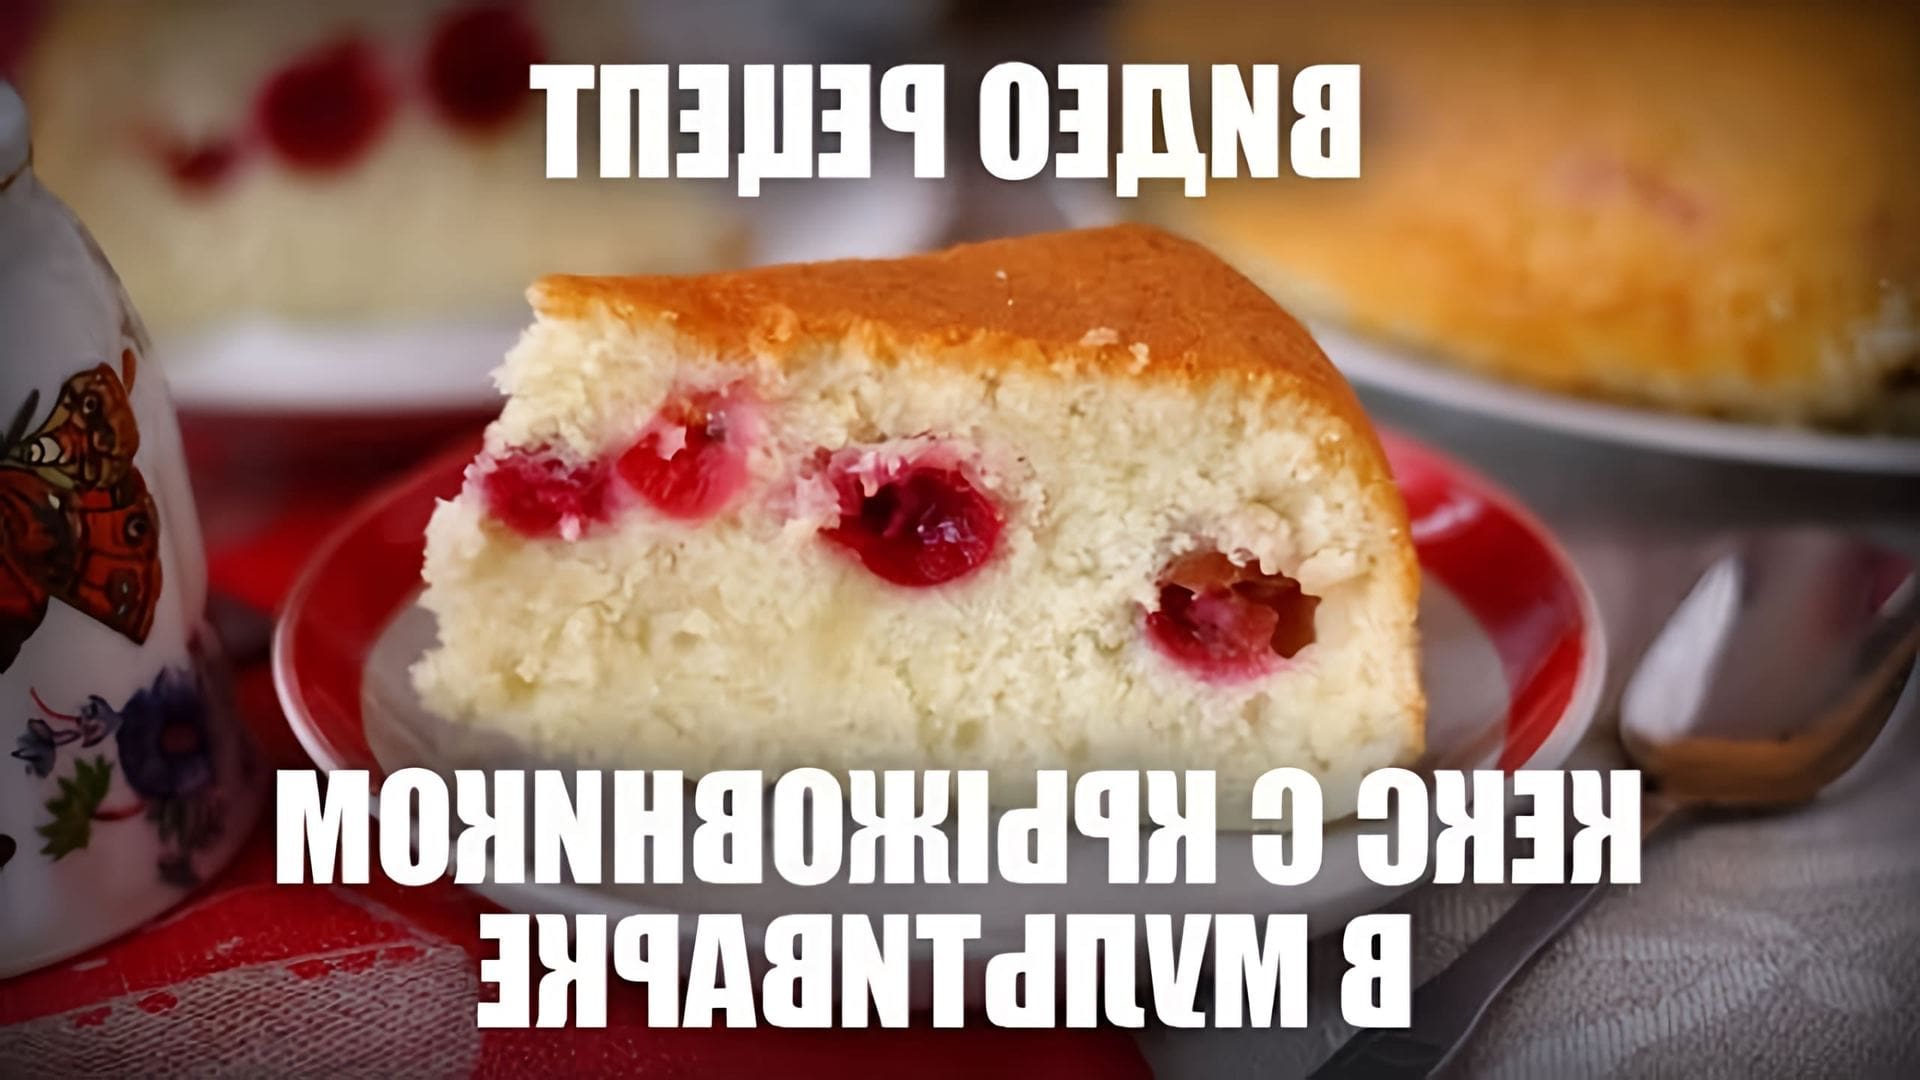 В этом видео демонстрируется рецепт приготовления кекса с крыжовником в мультиварке